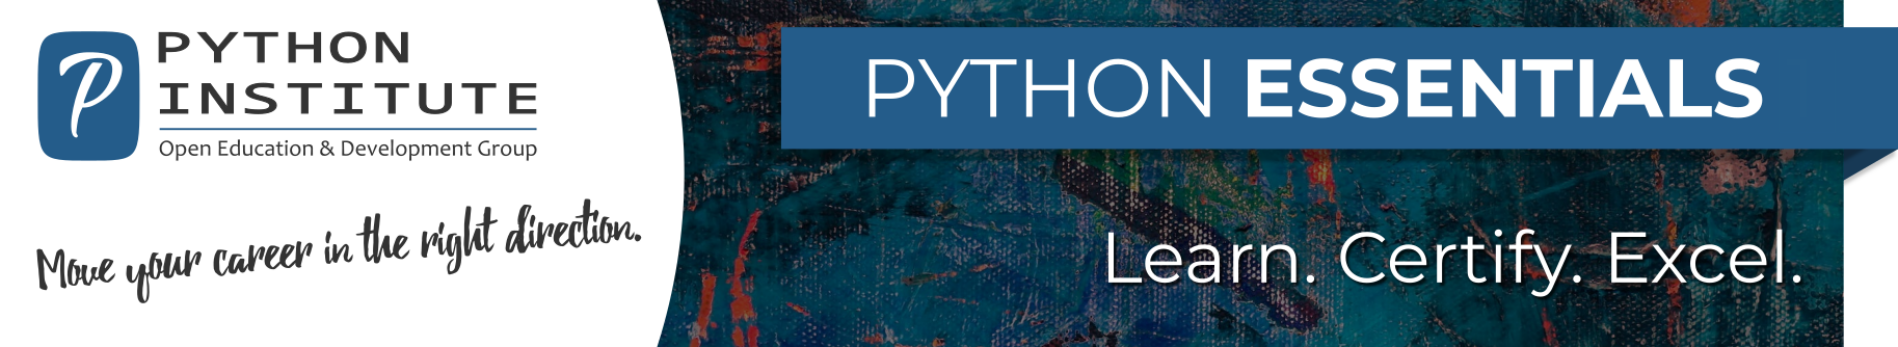 Python Essentials Course Series Banner